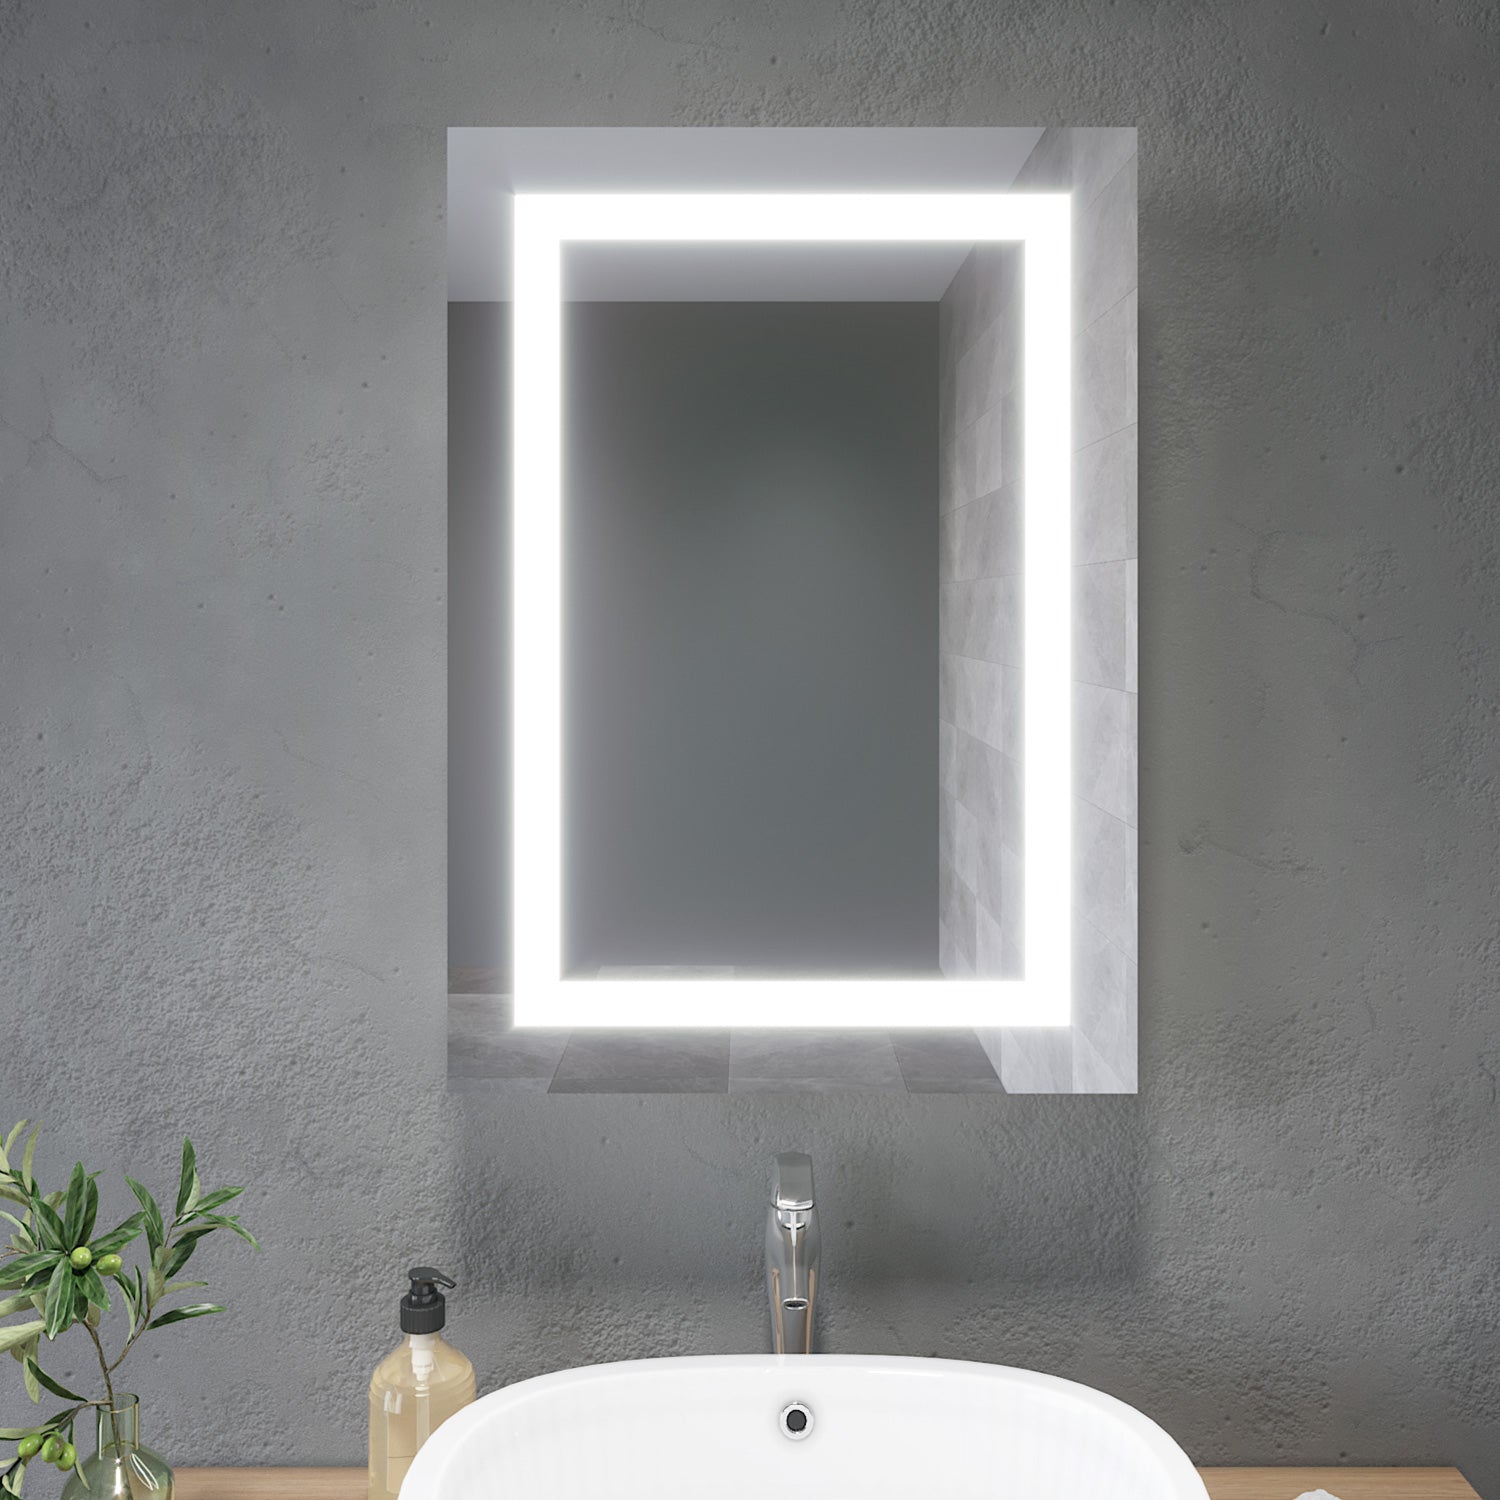 Badezimmer LED Spiegelschrank mit Beleuchtung Schiebetür Kabelanschluss 50 x 70 x 13cm